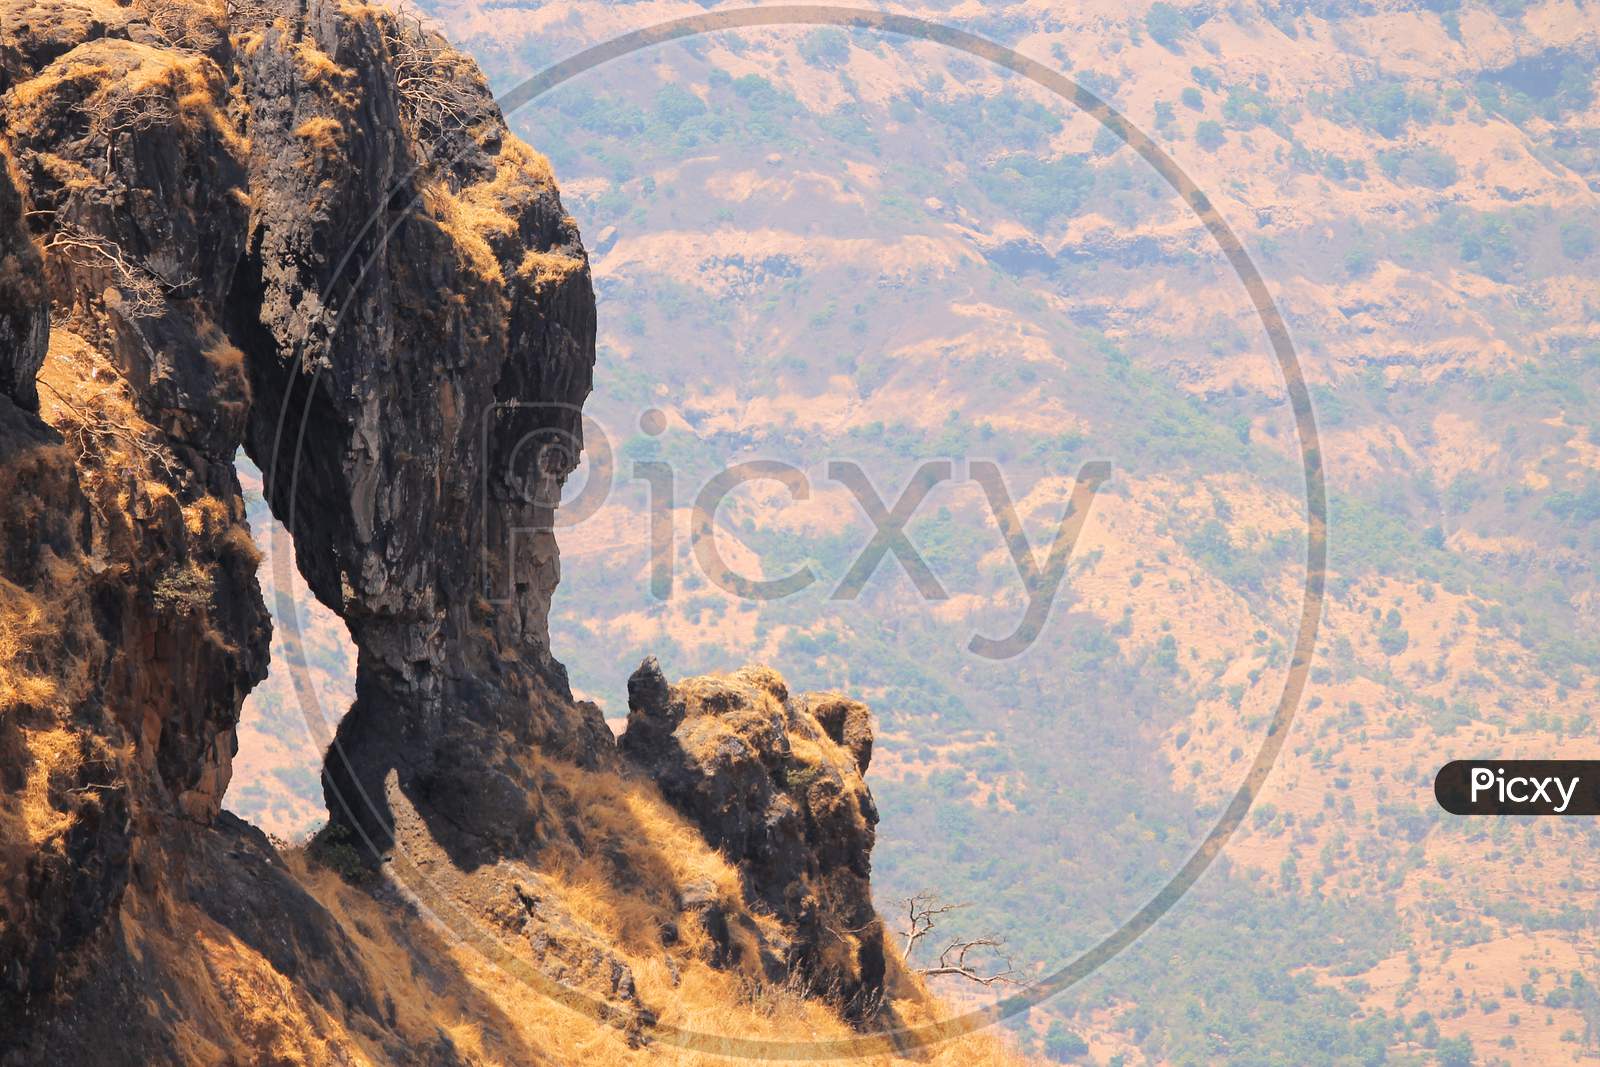 Elephant's head Point in Mahabaleshwar